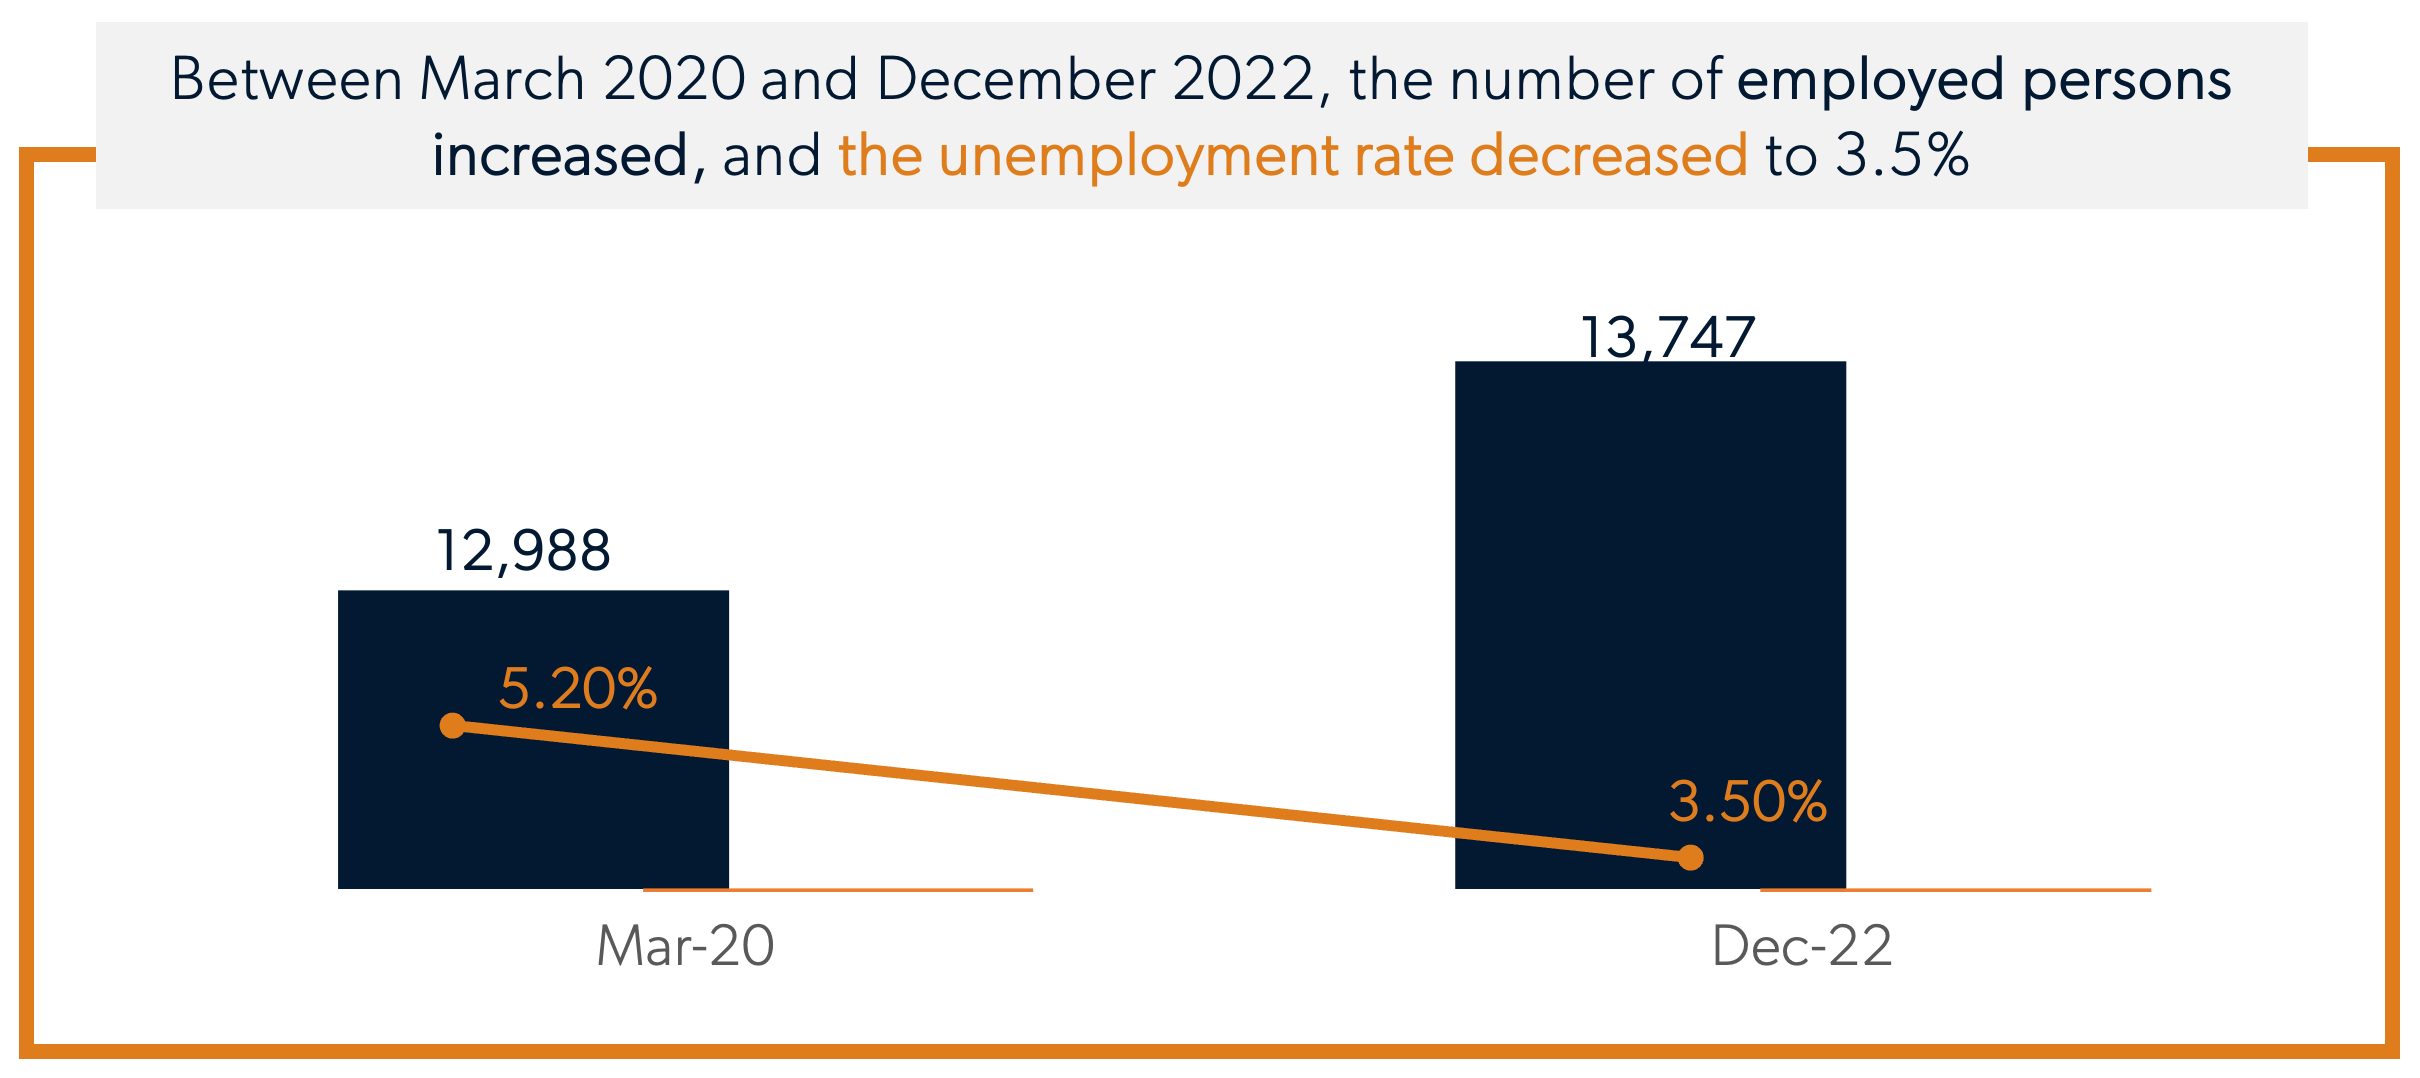 Australia_Workforce_Trends_2020-2022-Unemployment-Rate